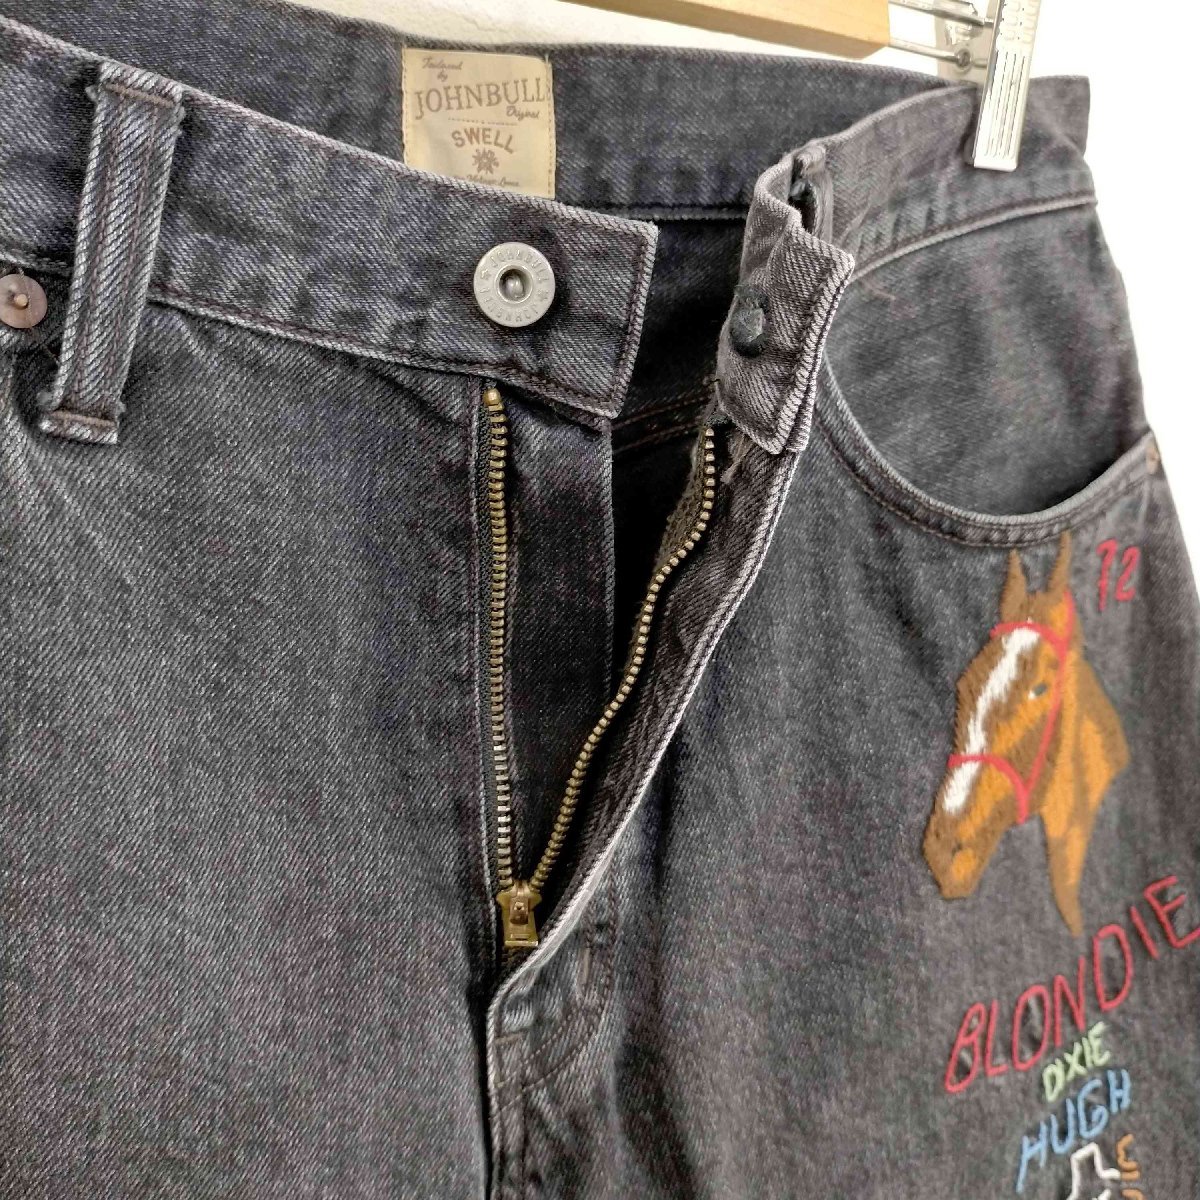 Johnbull(ジョンブル) Swell Vintage 刺繍レギュラージーンズ メンズ 30 中古 古着 0345_画像3